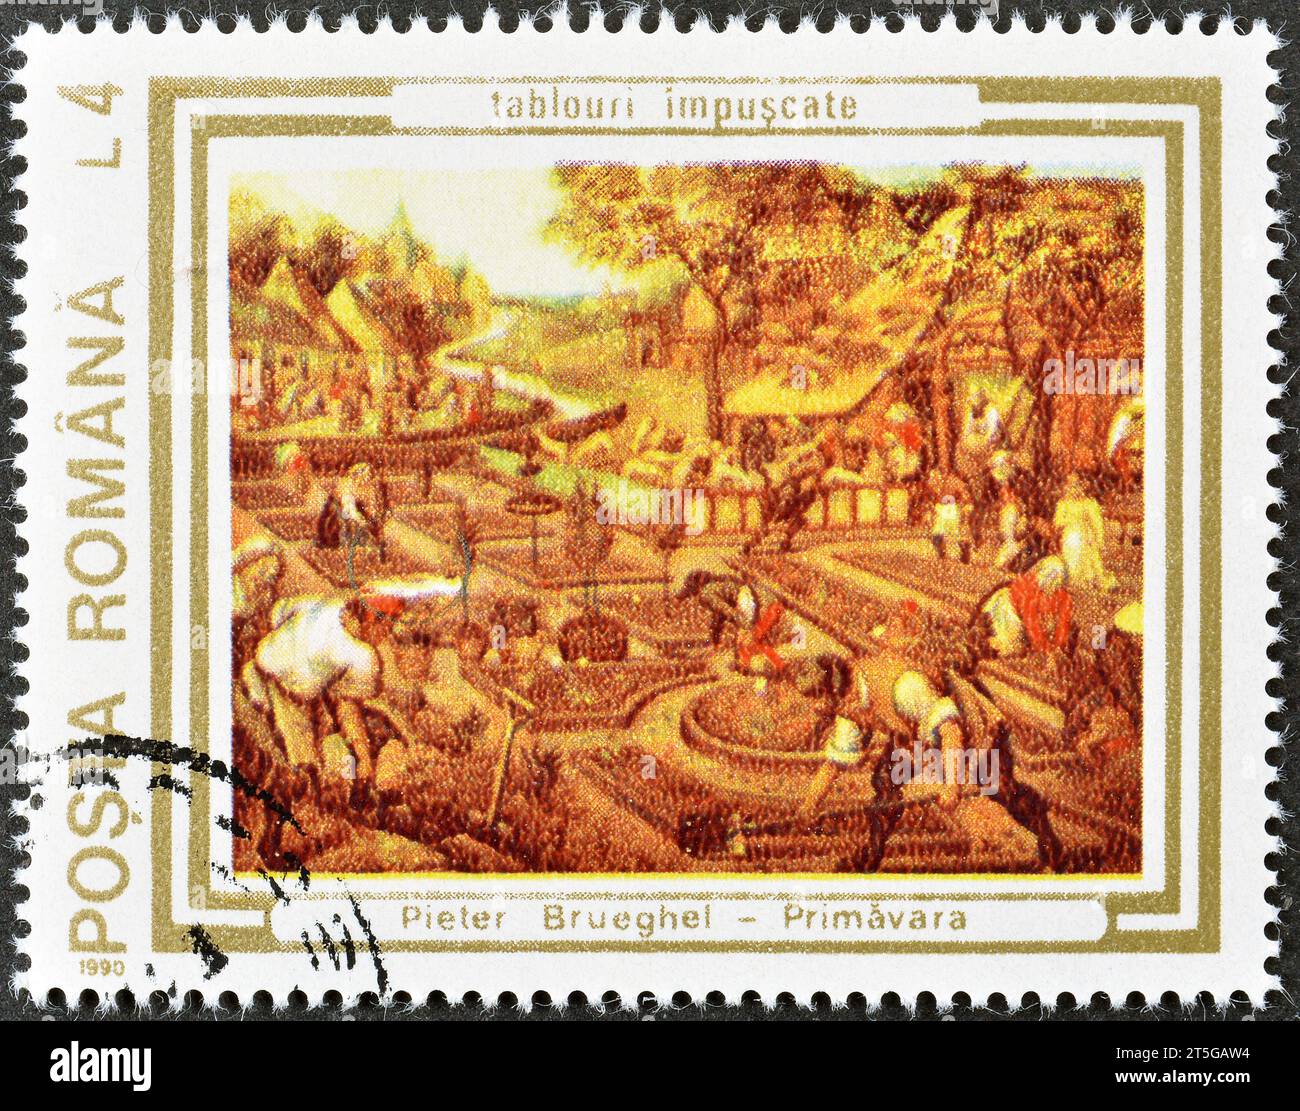 Timbre-poste annulé imprimé par la Roumanie, qui montre Printemps, Peter Brueghel l'ancien, peintures endommagées à la Révolution, vers 1990. Banque D'Images